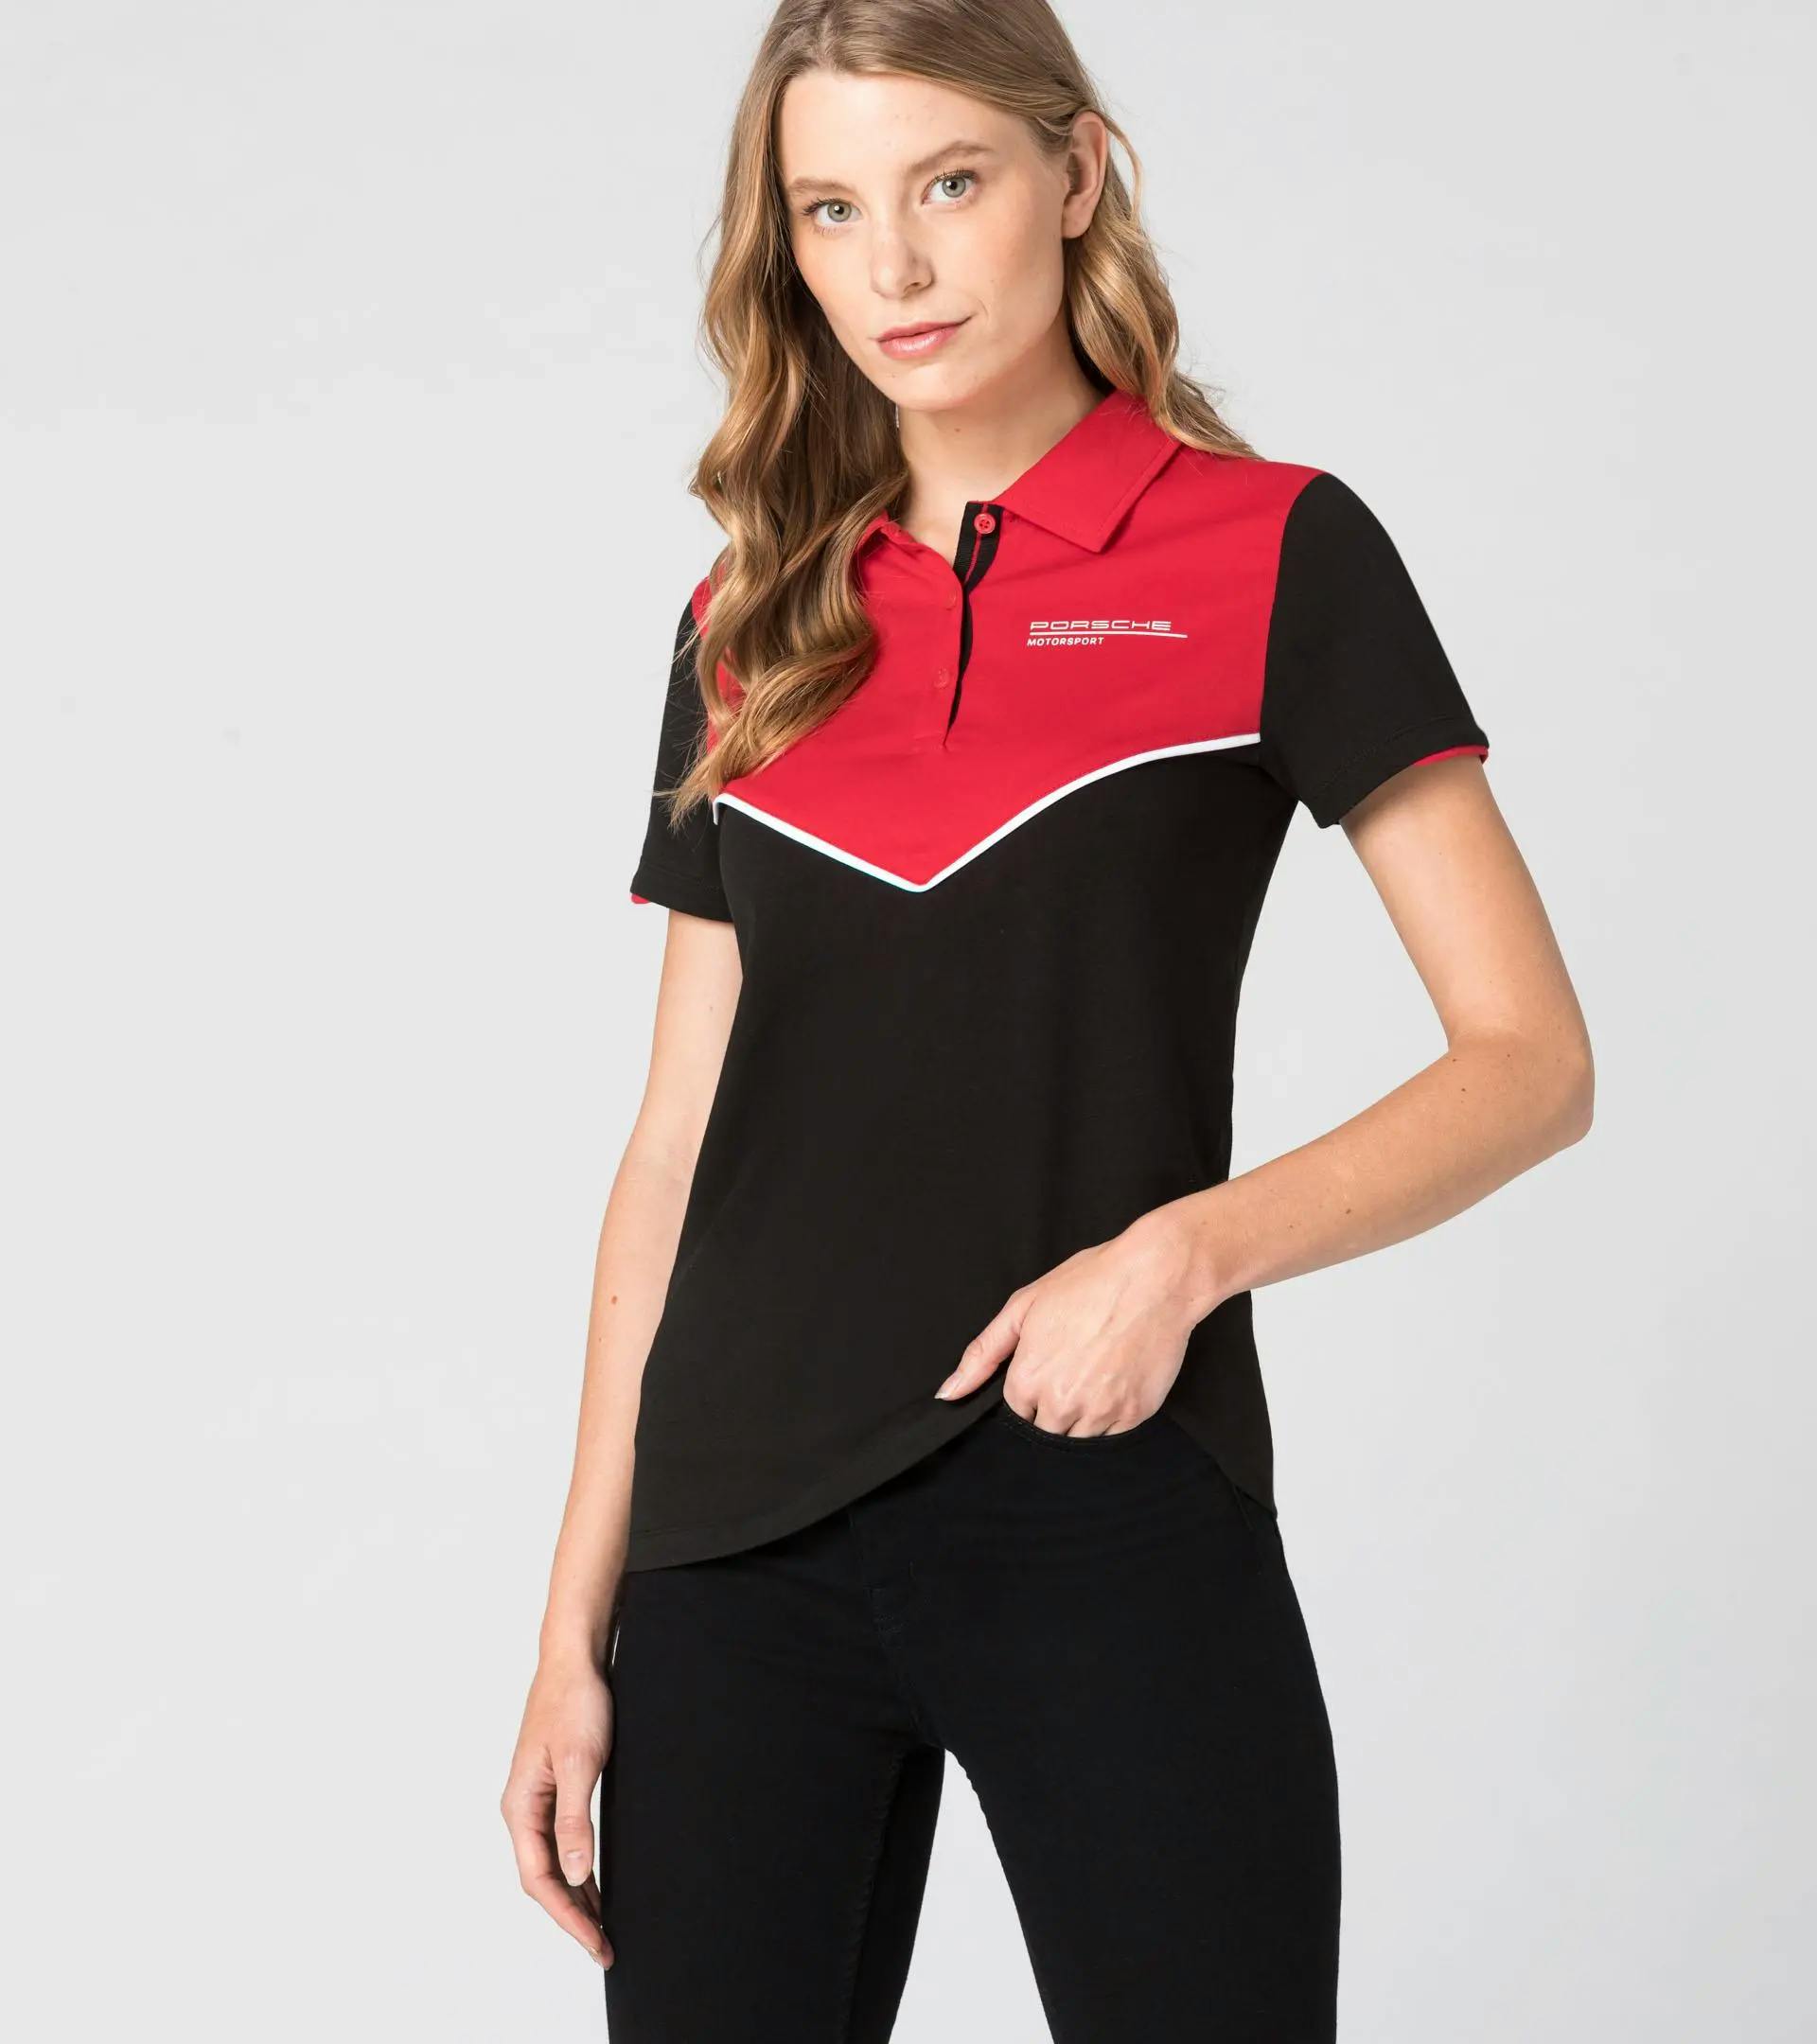 Women's Polo shirt – Motorsport Fanwear 5